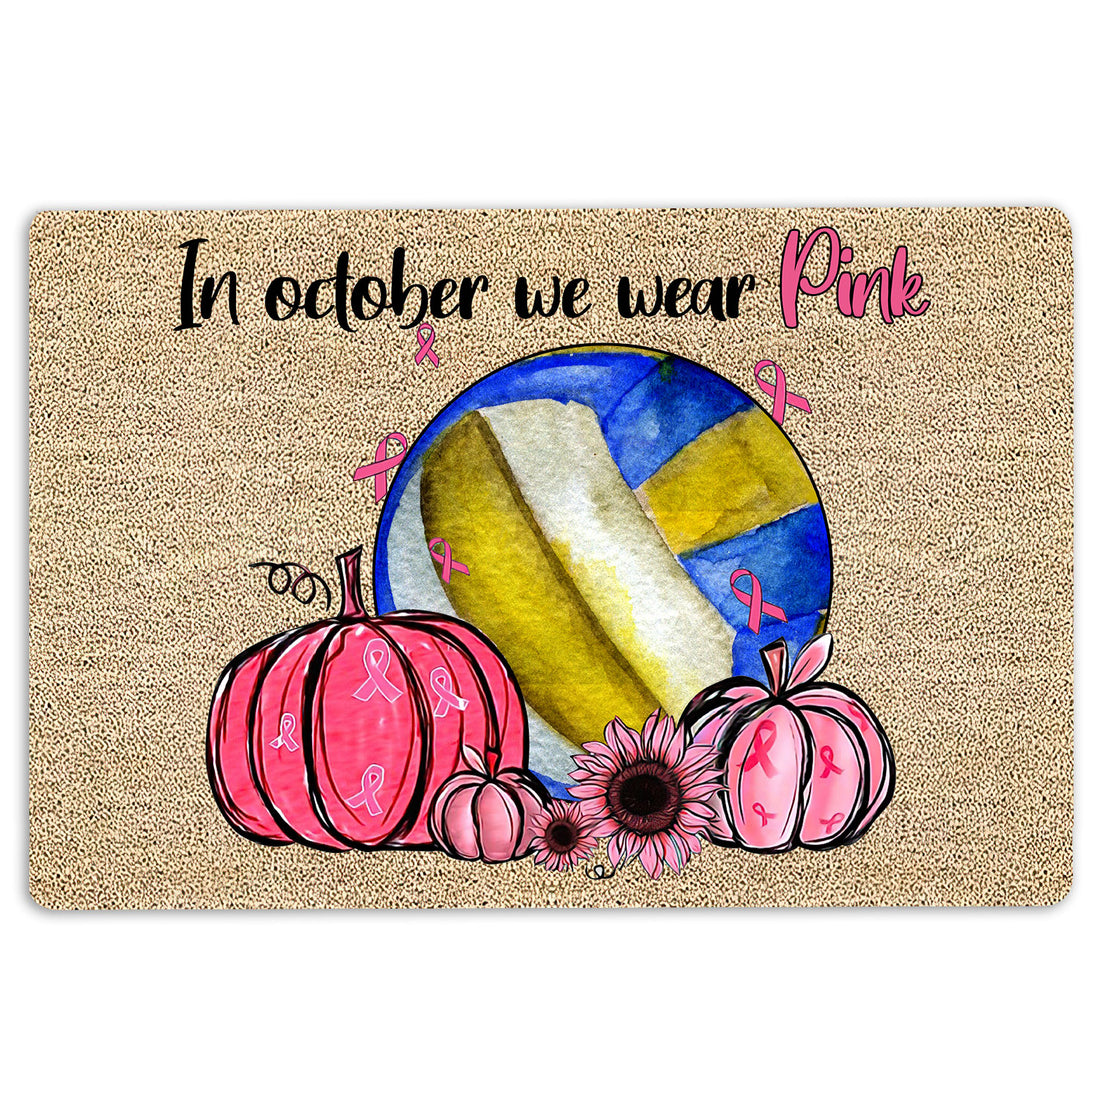 Ohaprints-Doormat-Outdoor-Indoor-Breast-Cancer-Volleyball-In-October-We-Wear-Pink-Rubber-Door-Mat-1921-18'' x 30''